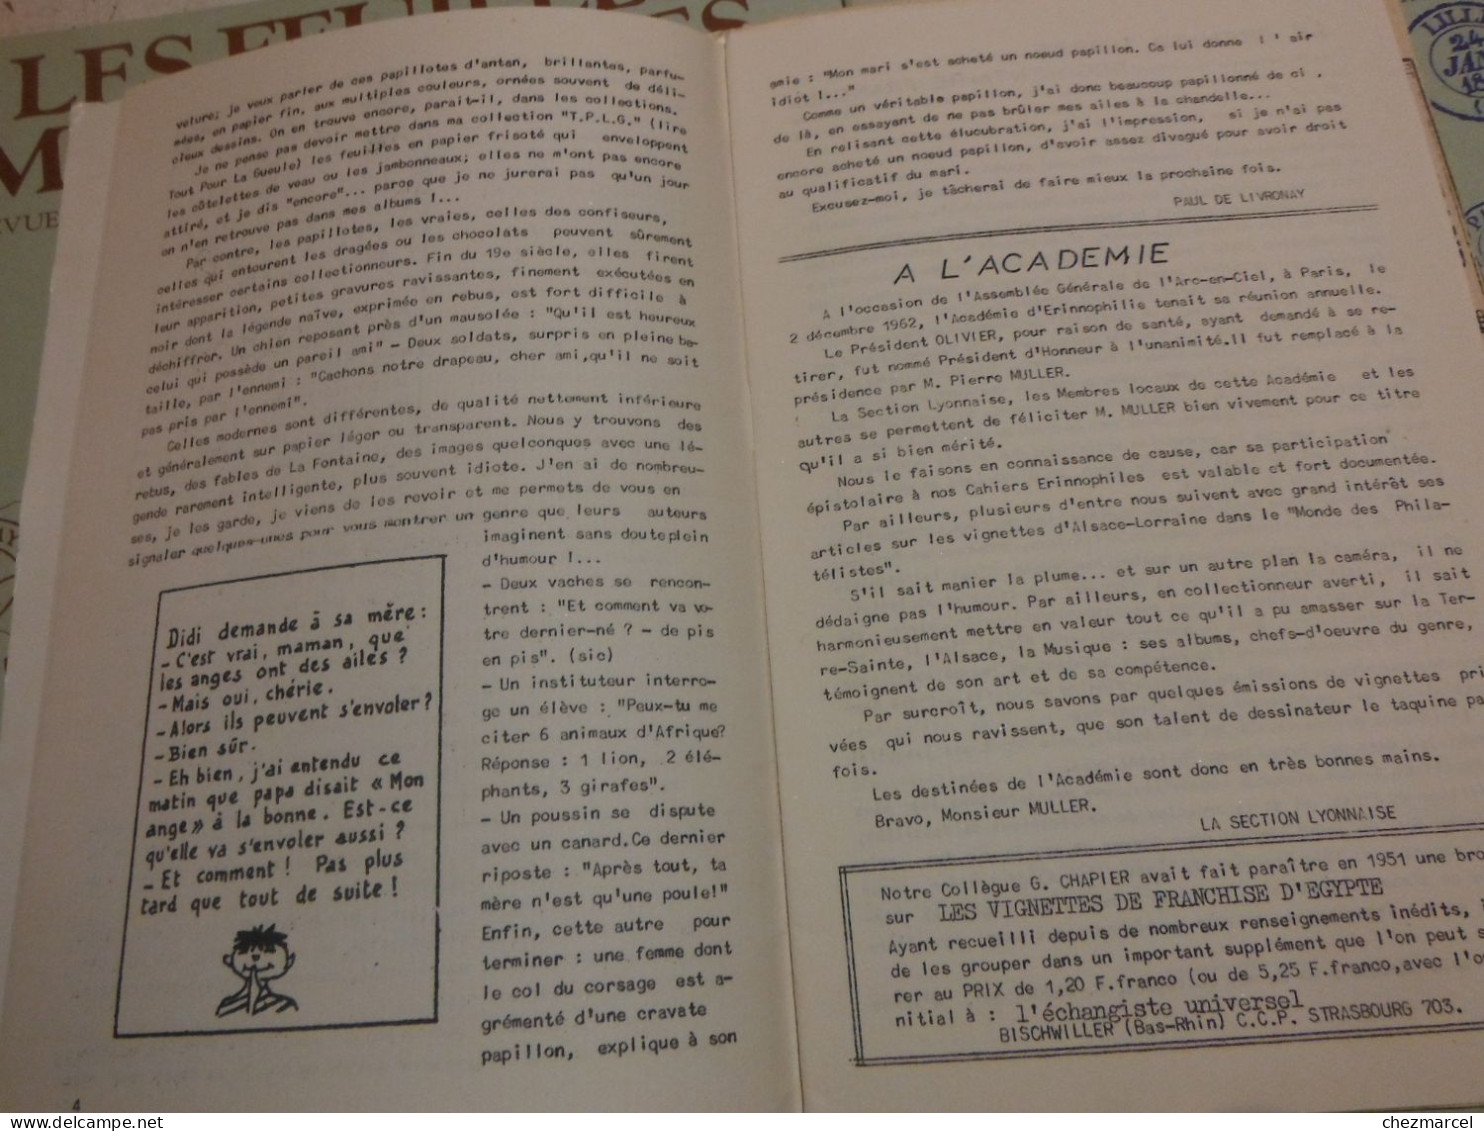 RARE  22 numeros les cahiers erinnophiles du sud.est 1961/62 et 63/64 4 annees de bulletins section lyonnaise de l aec